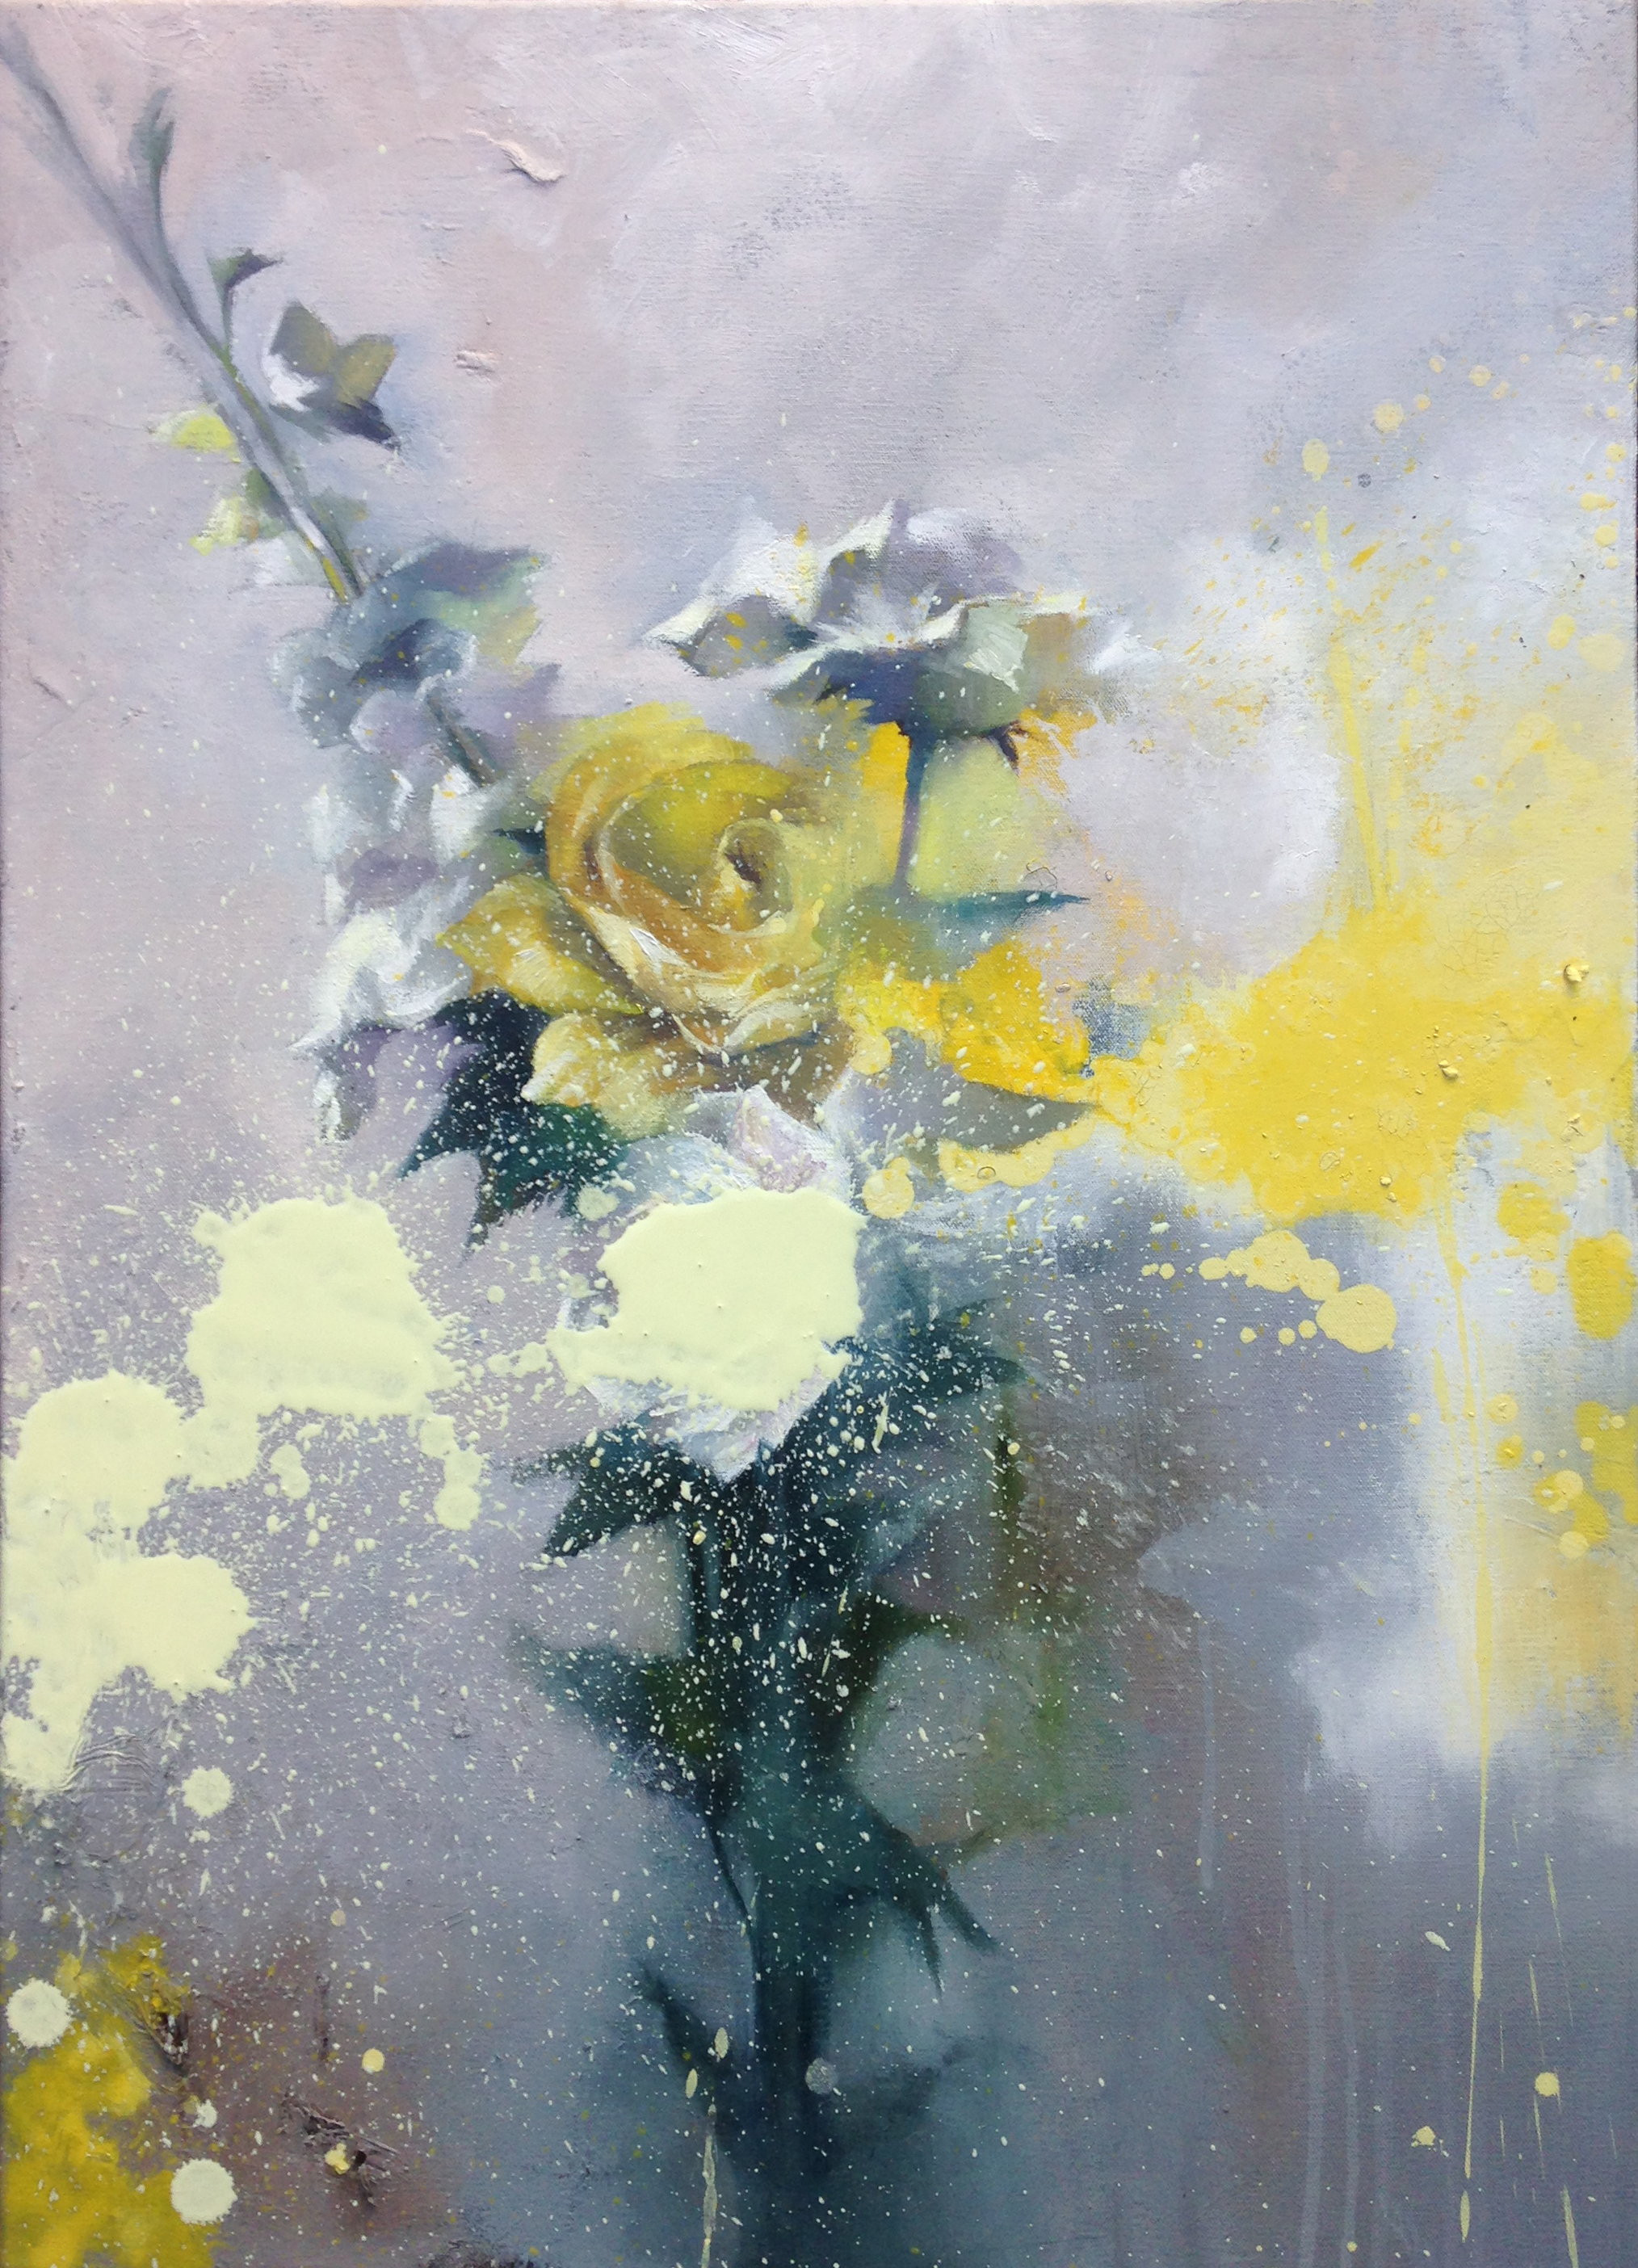 Les Fleurs du Mal 20"x28" oil on canvas 2015